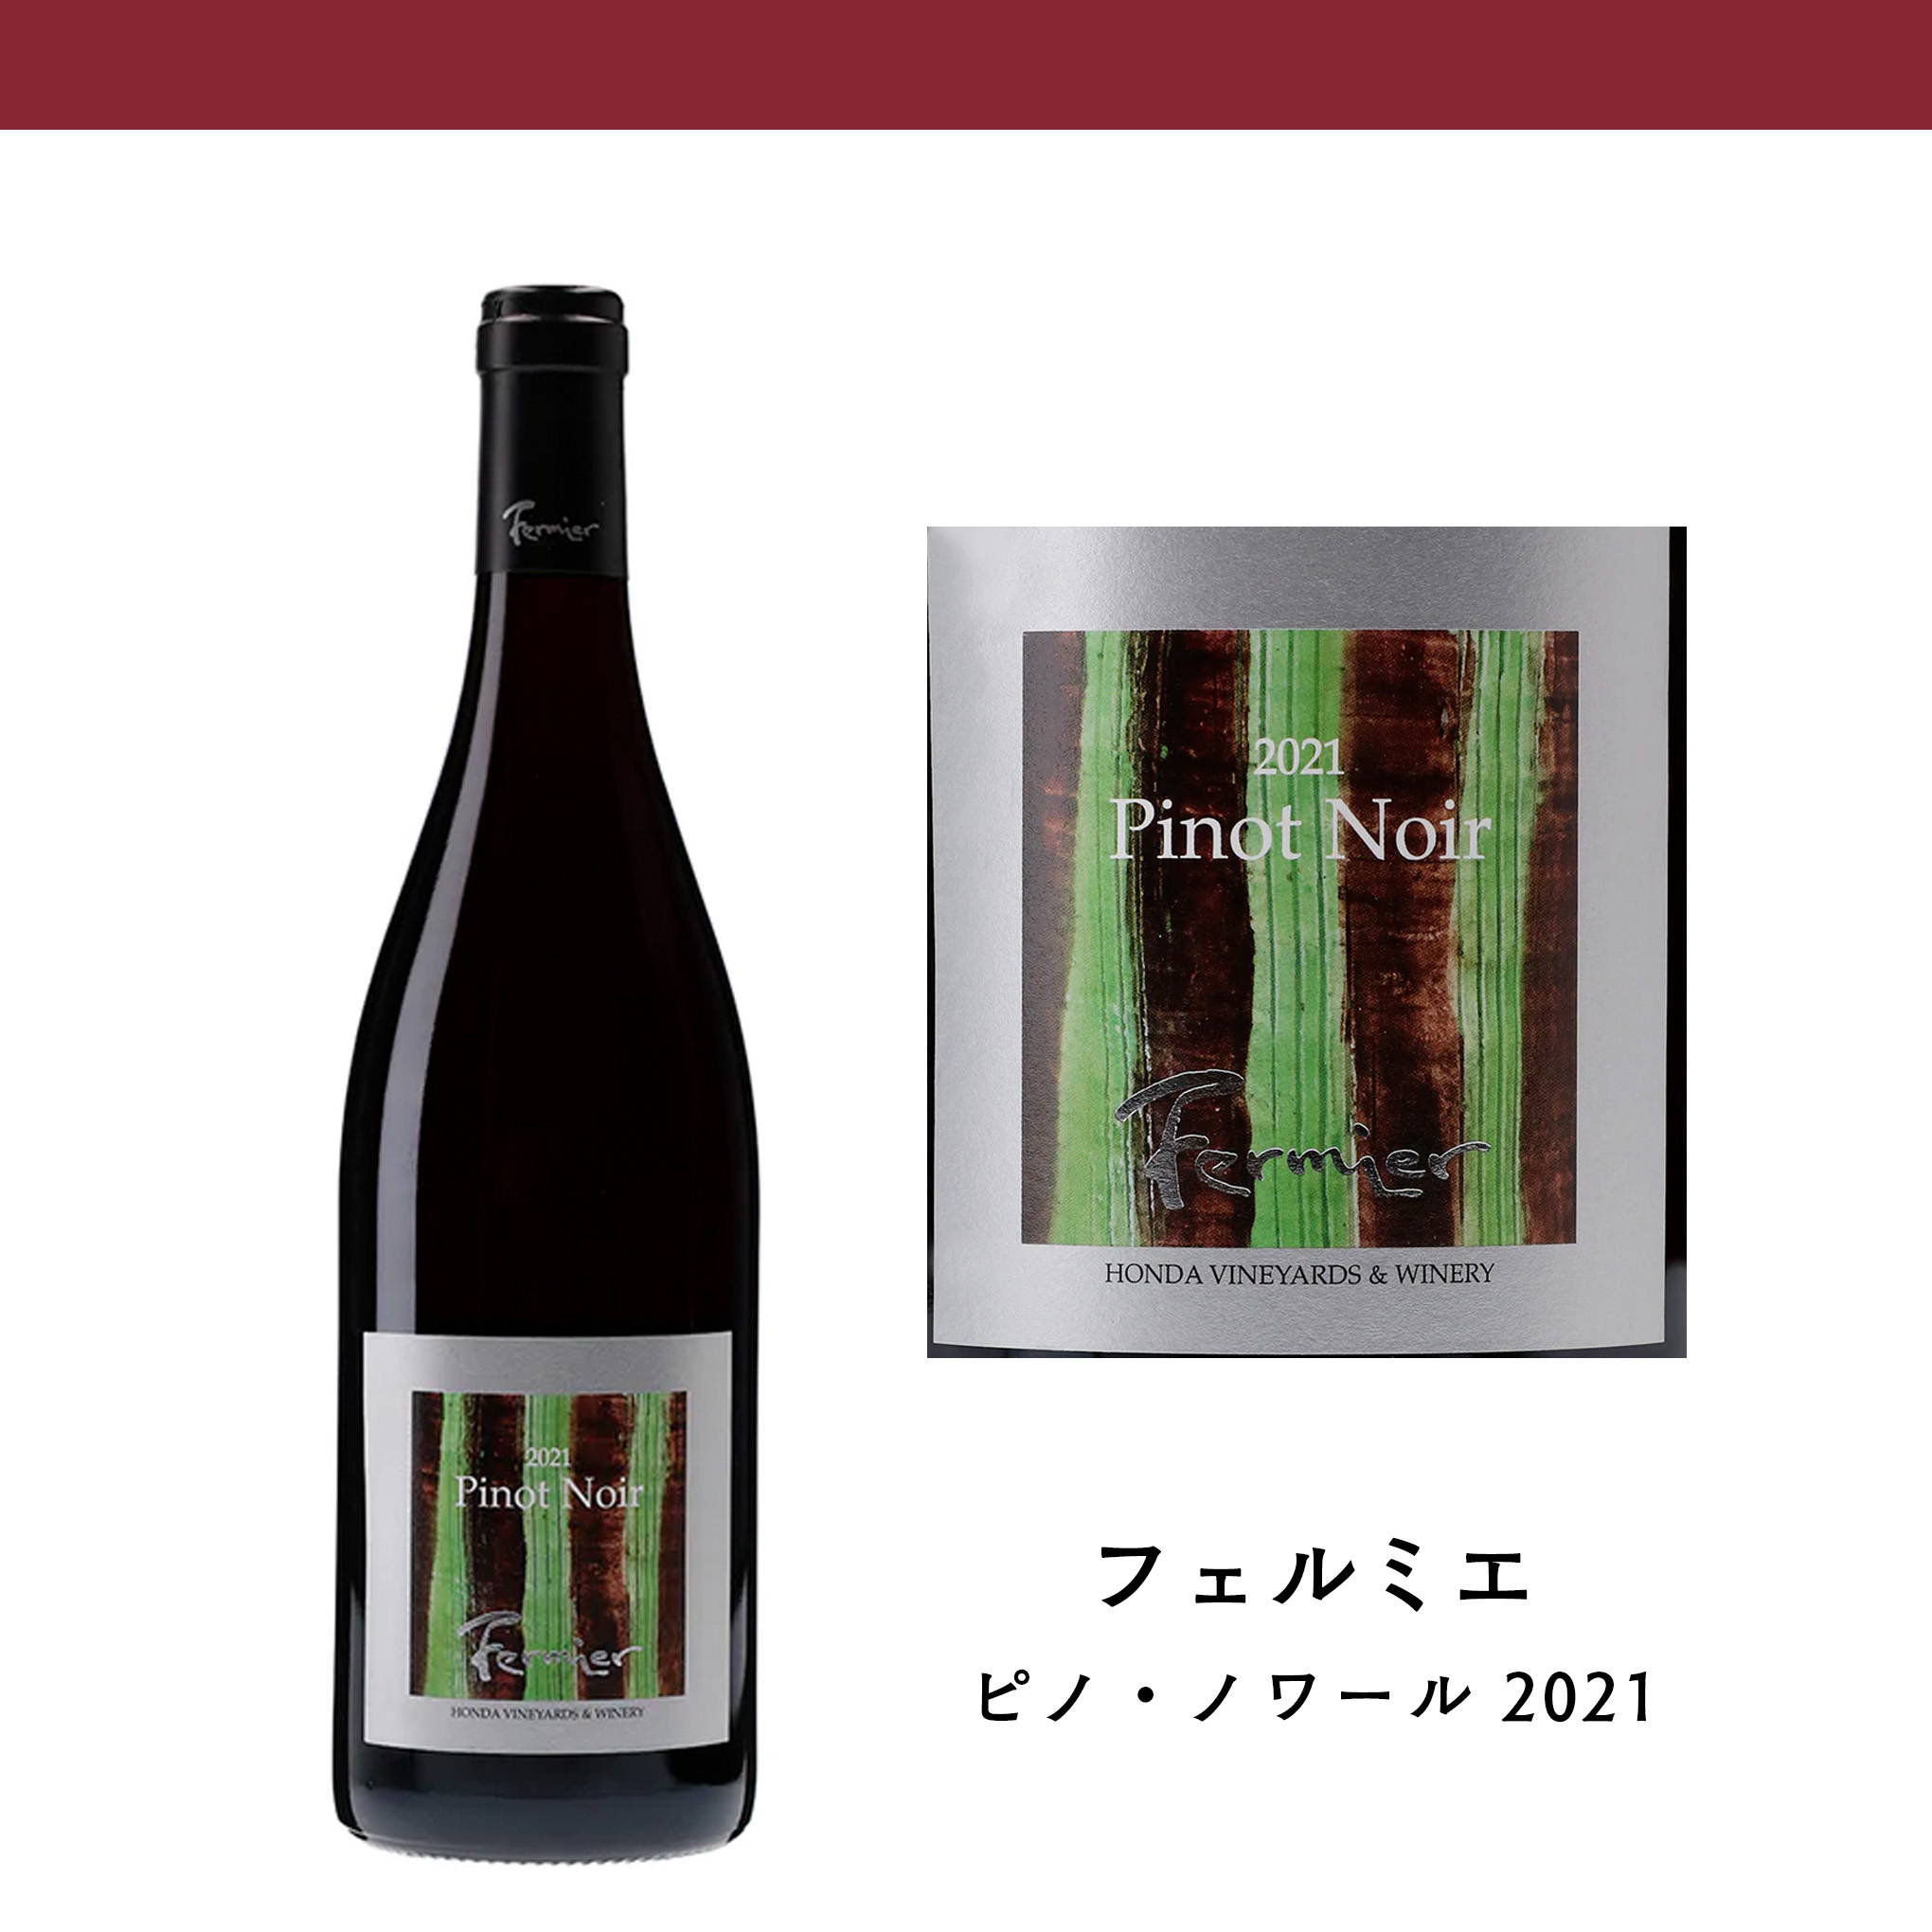 2013年に新潟市西蒲区角田浜の畑に複数クローンの苗木を植えてスタート！『フェルミエ』の「ピノ・ノワール」プロジェクトで誕生した赤ワイン。